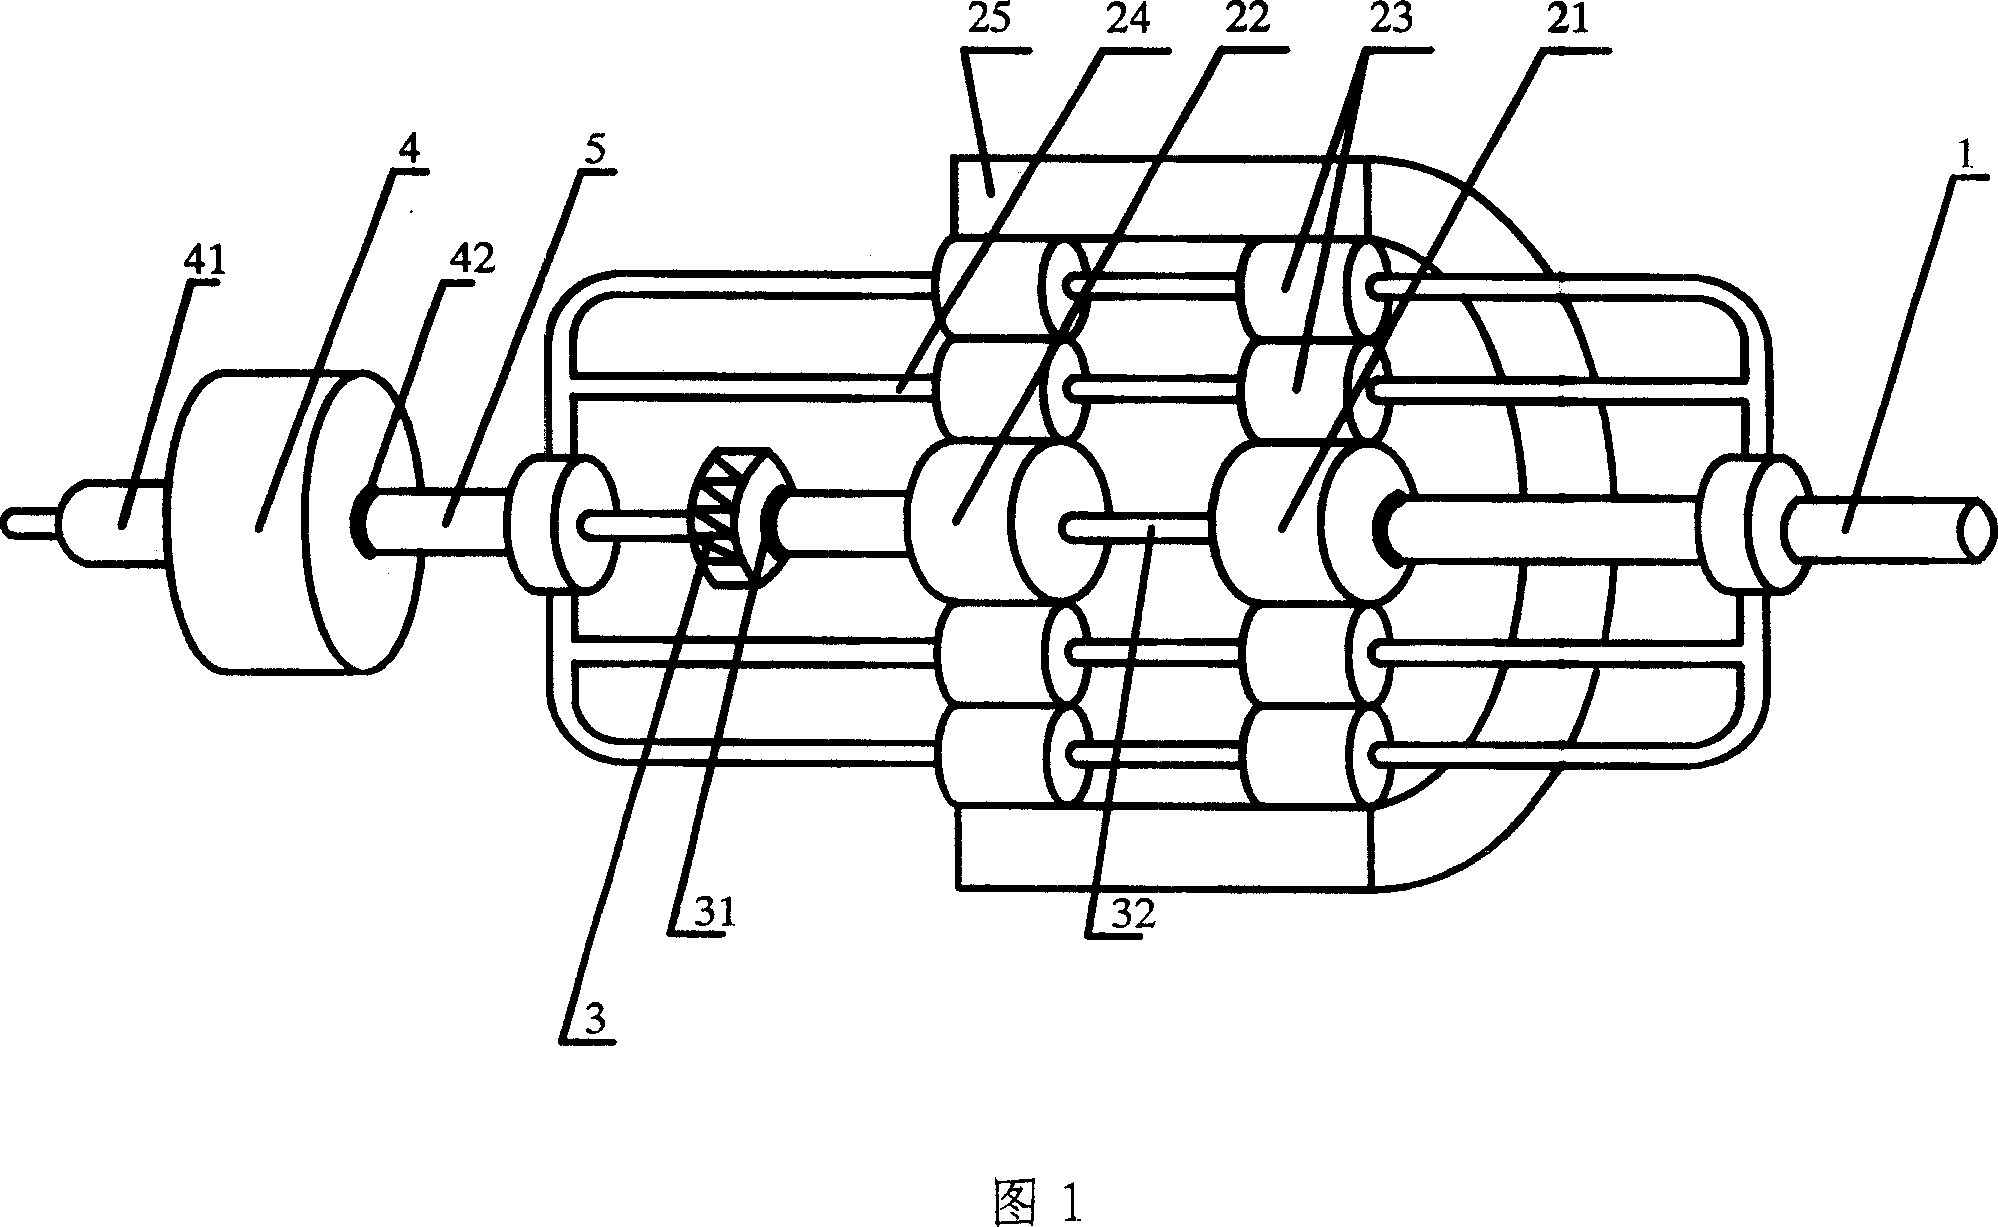 Hydraulic pump and hydraulic motor